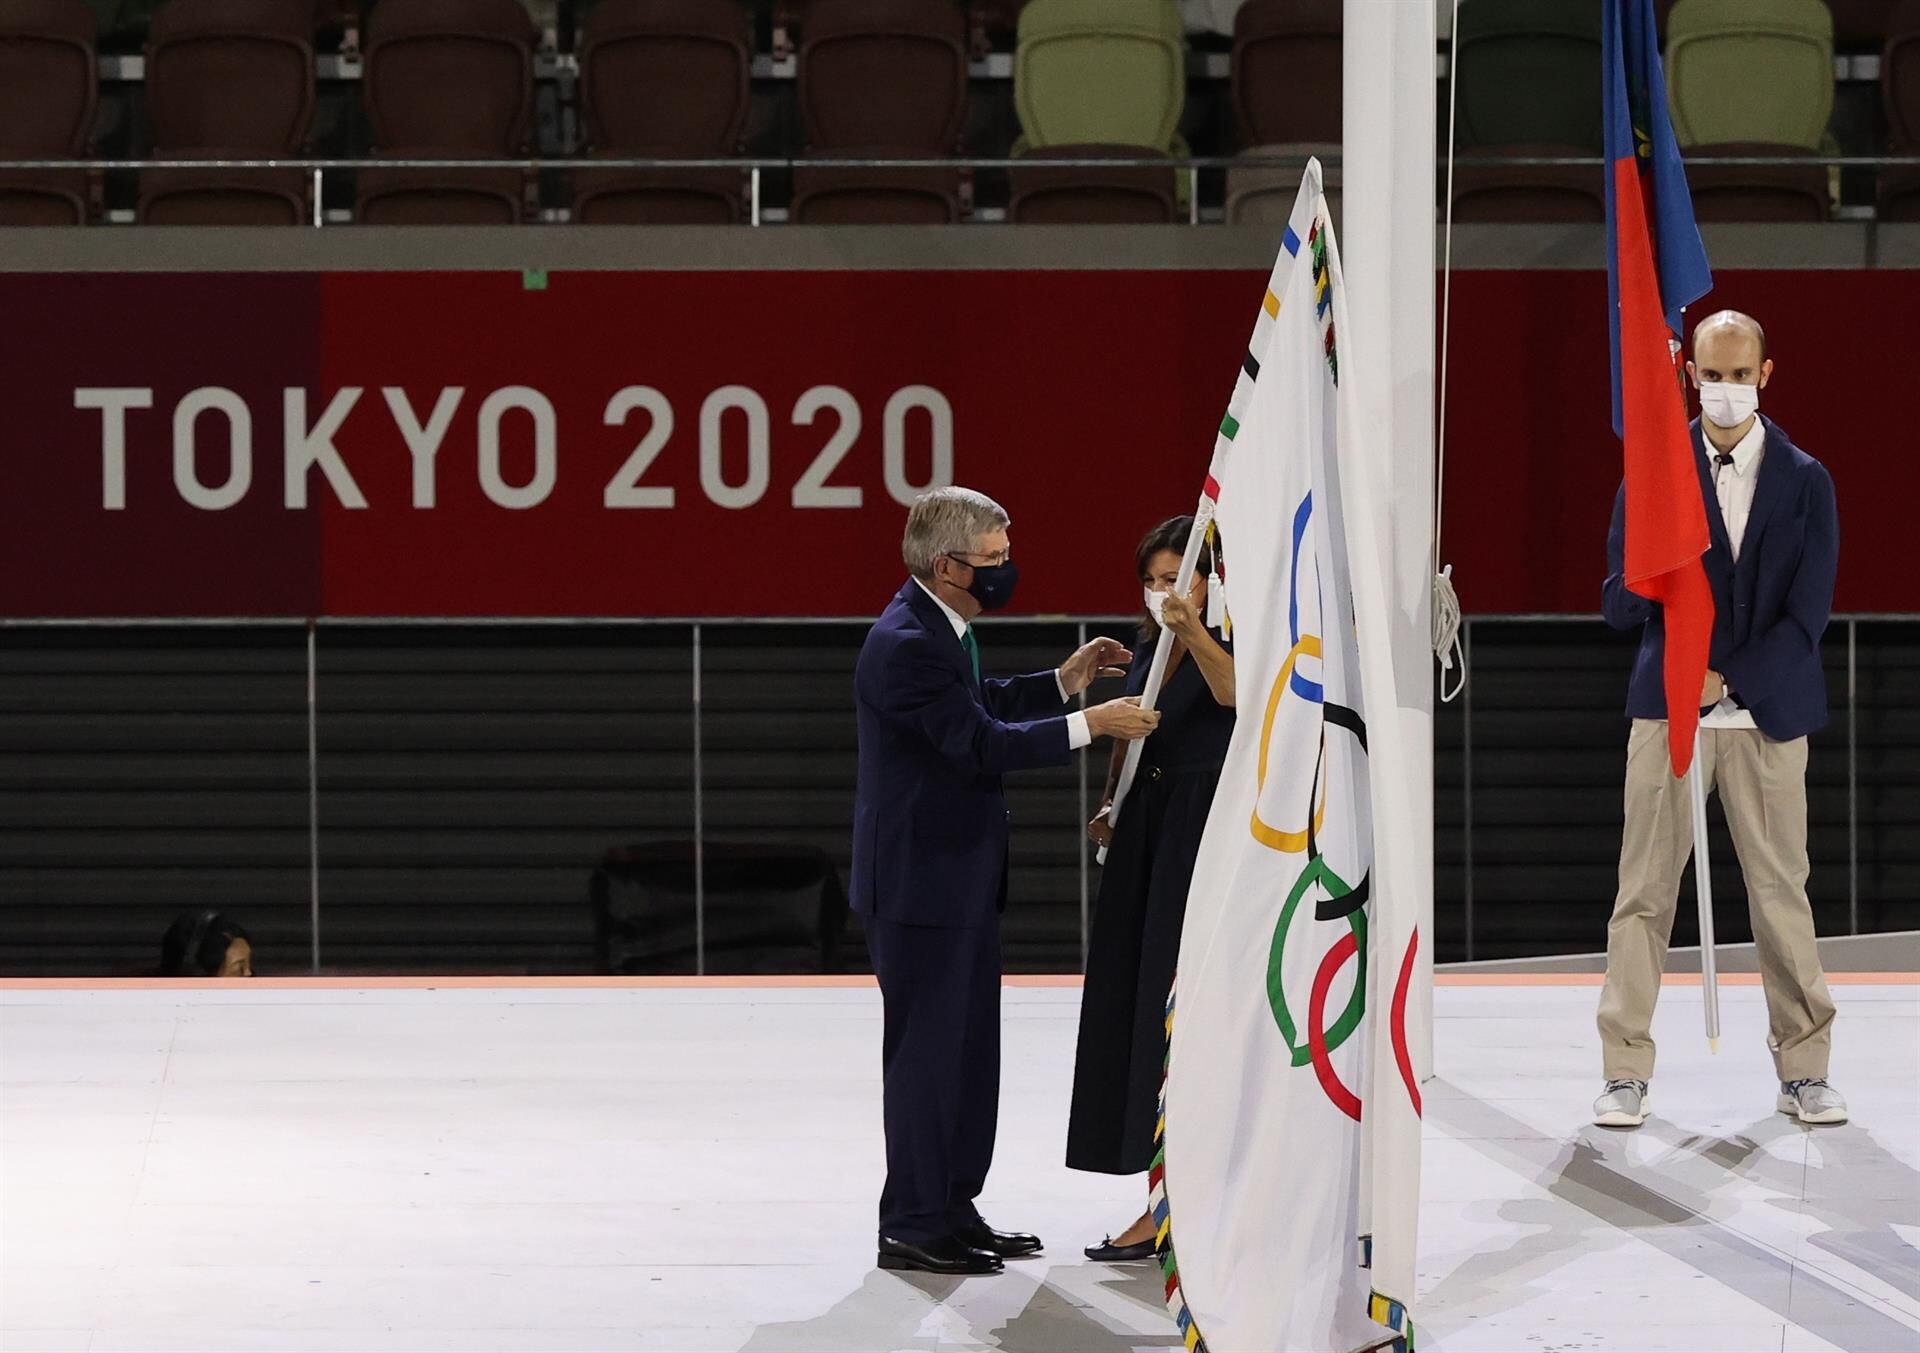 “Nos dieron el mejor regalo: esperanza”, dice Bach a los atletas de Tokio 2020